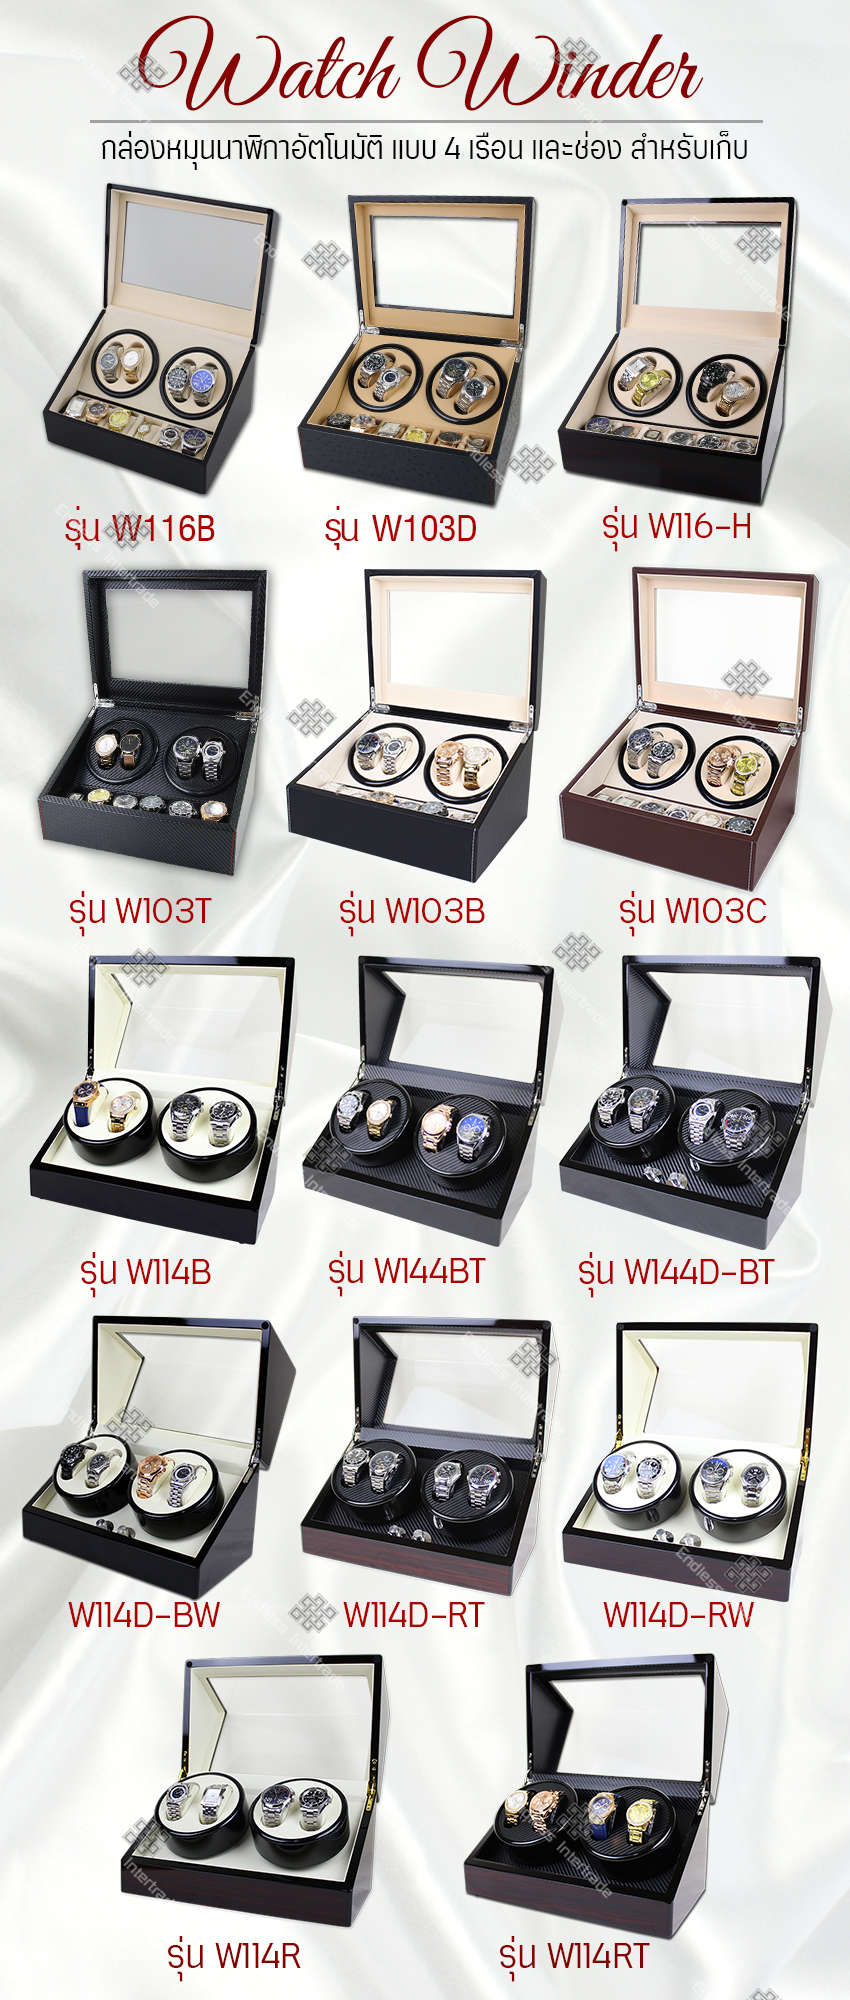 มุมมองเพิ่มเติมของสินค้า Elit Watch Winder4 กล่องหมุนนาฬิกาอัตโนมัติแบบ 10 เรือน กล่องหมุนนาฬิกาออโต้เมติก กล่องใส่นาฬิกา กล่องโชว์นาฬิกา ตู้ใส่นาฬิกา Watch Winder